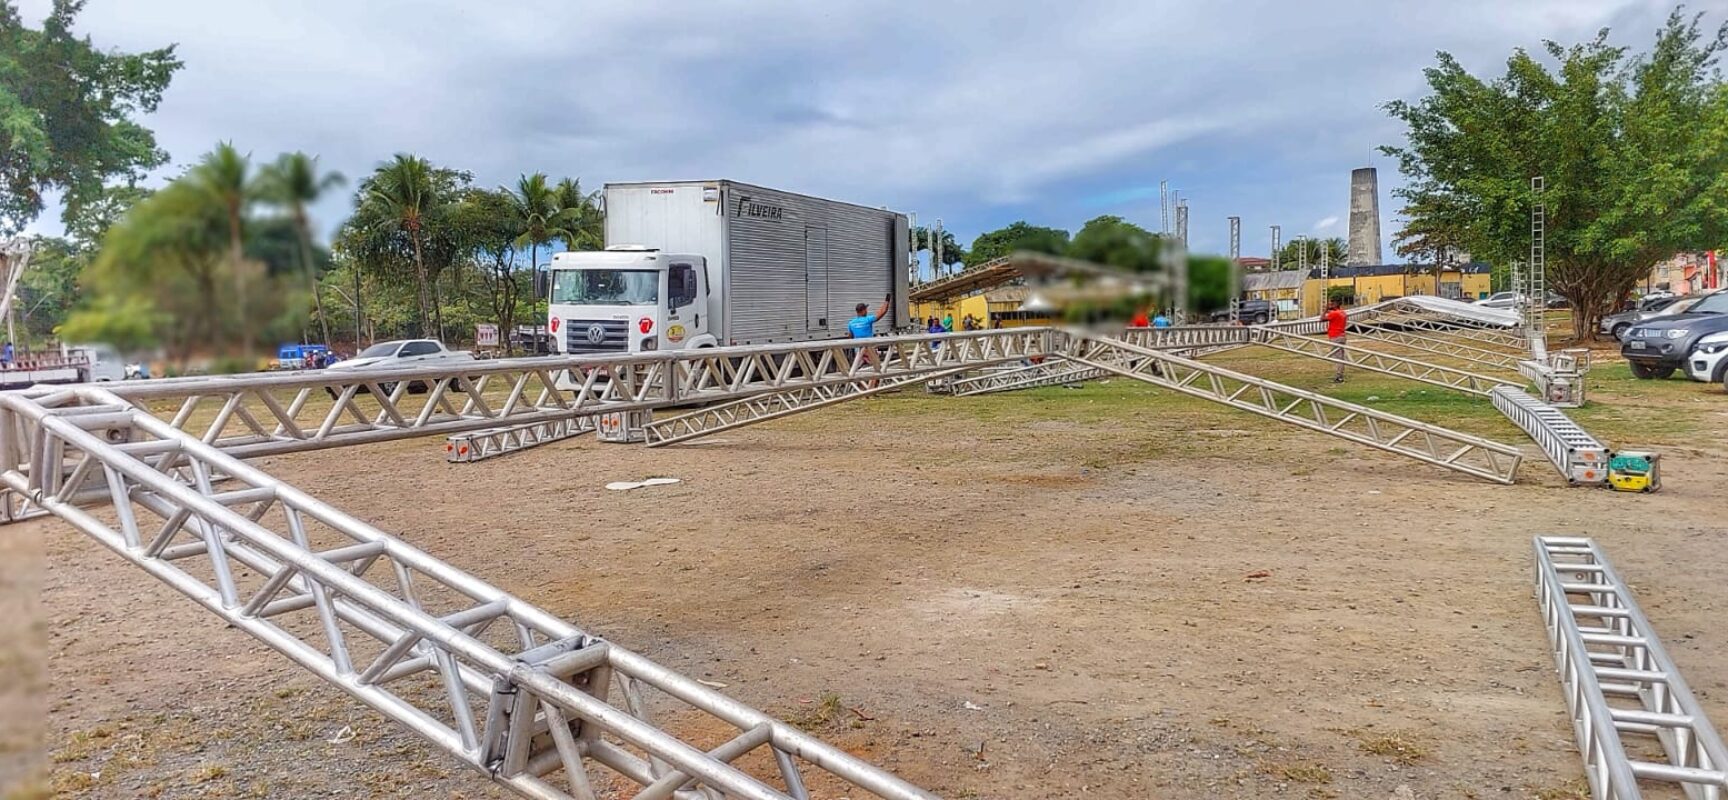 Arena Zé Cachoeira disponibilizará uma megaestrutura para o público do Ita Pedro